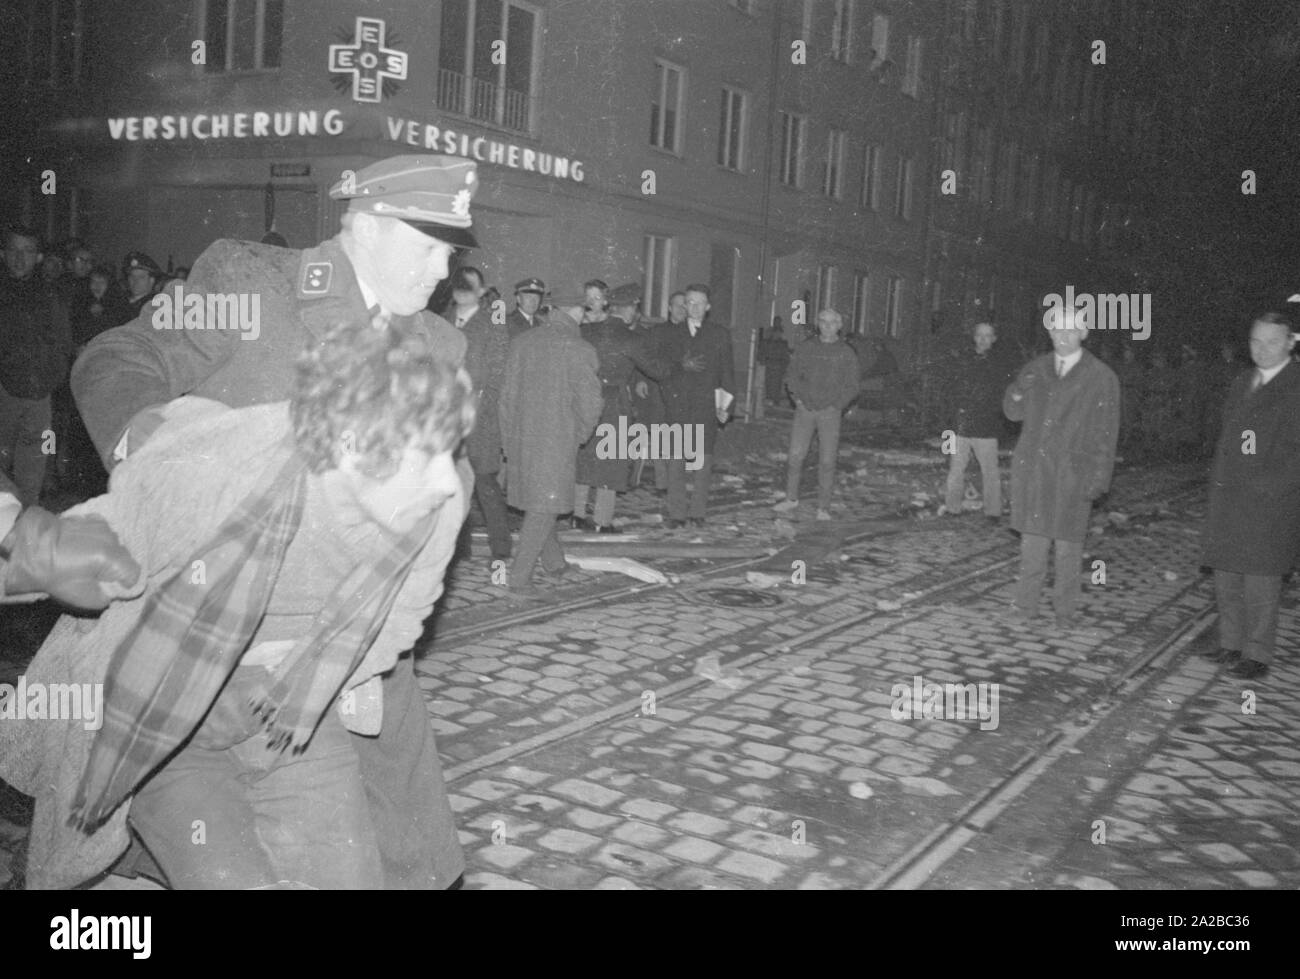 Après la tentative d'assassinat sur Rudi Dutschke, des actions ont eu lieu contre la maison d'édition Springer dans toute l'Allemagne sur le week-end de Pâques 1968. À Munich, les manifestants tentent d'interrompre la livraison de la Bild-Zeitung à travers la barricade de la librairie de Munich sur Schellingstrasse (soit 12,04 ou 15,04.). Dans l'image : policiers entraînent un manifestant. Banque D'Images